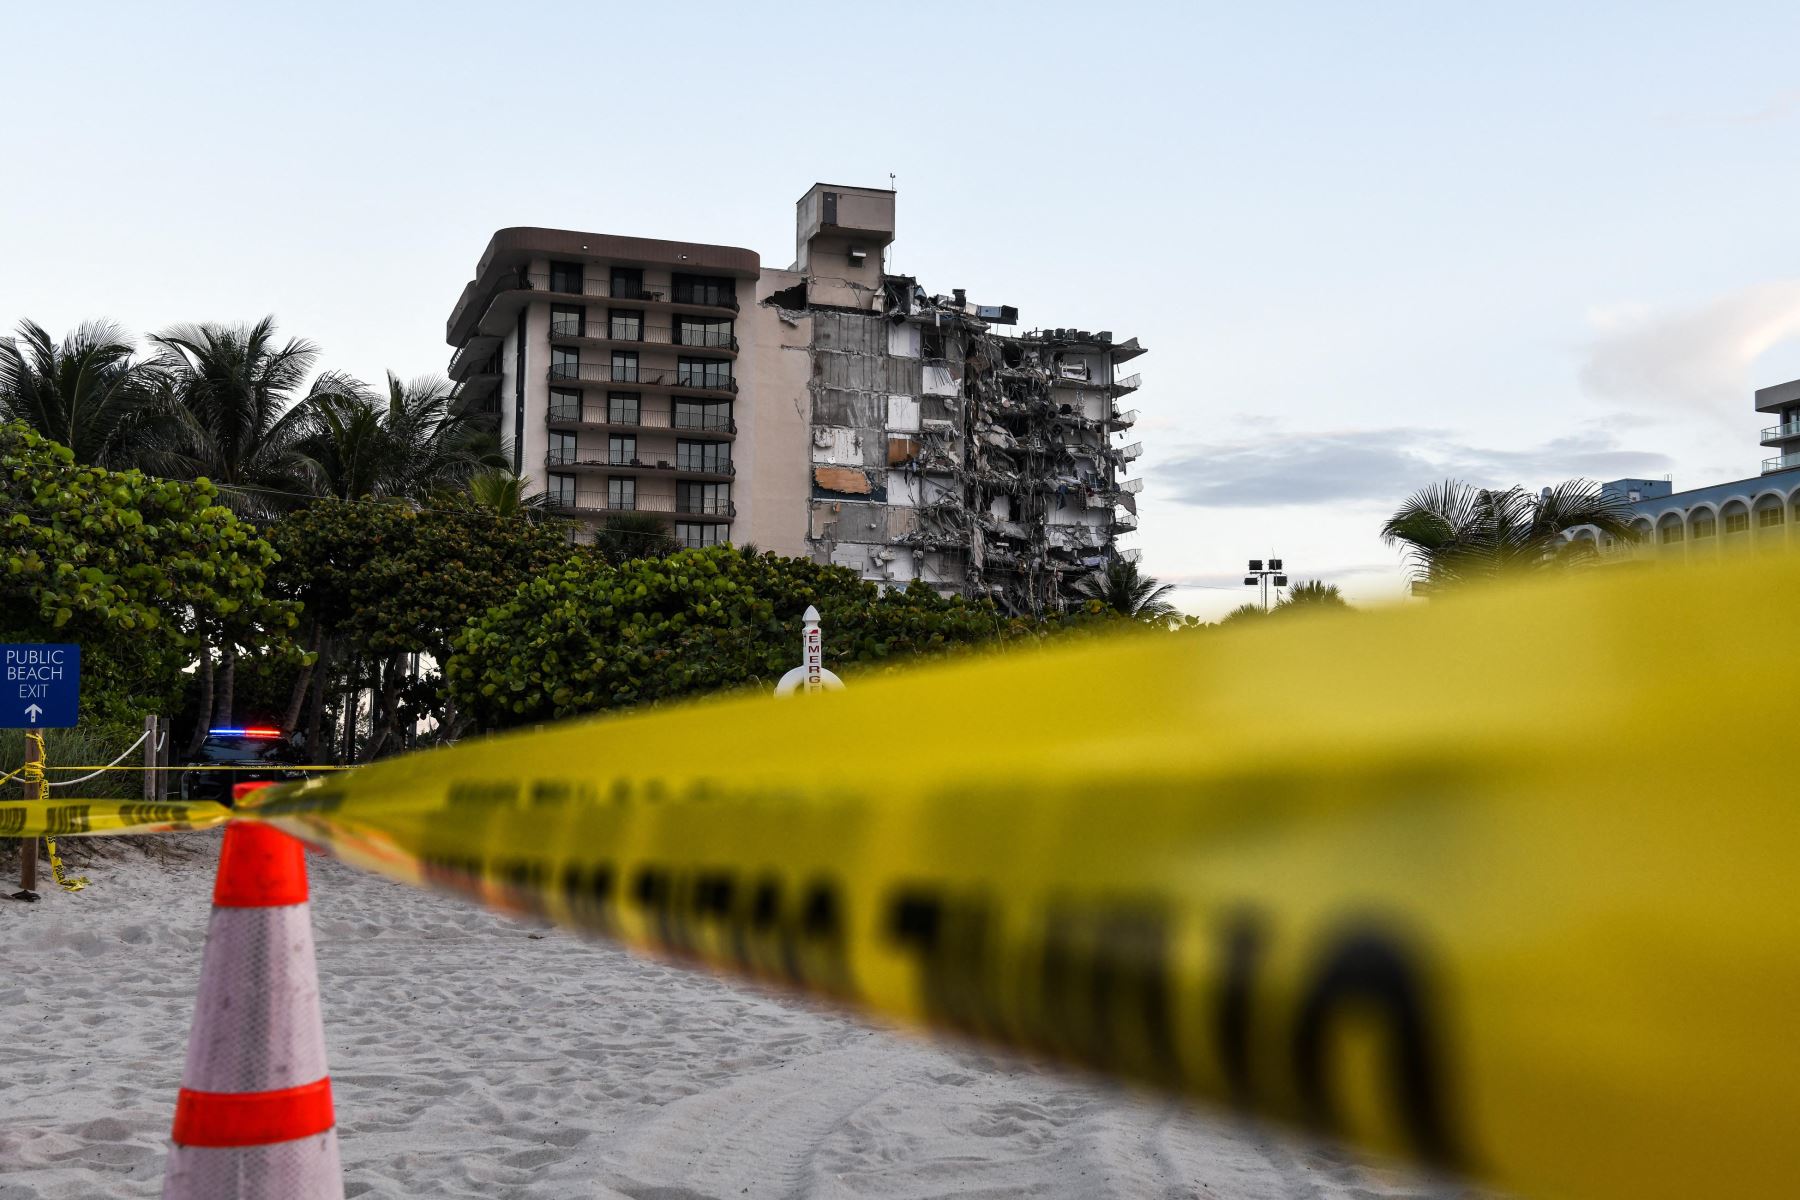 Se derrumba parcialmente un edificio cerca de Miami; hay al menos un muerto y 10 heridos. Foto: AFP